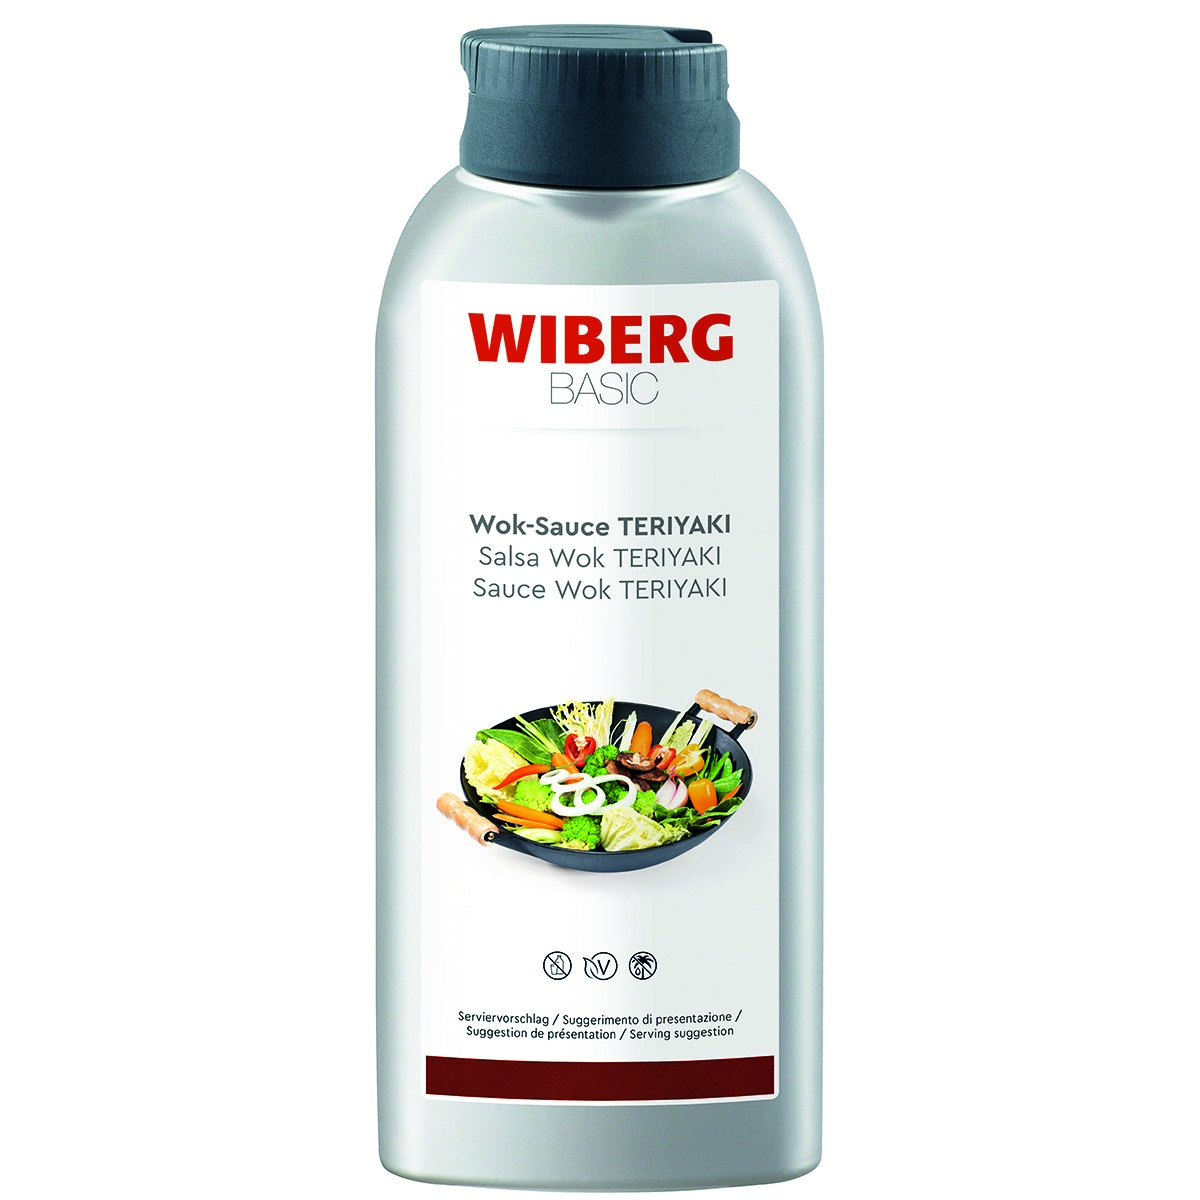 WIBERG BASIC Wok-Sauce TERIYAKI